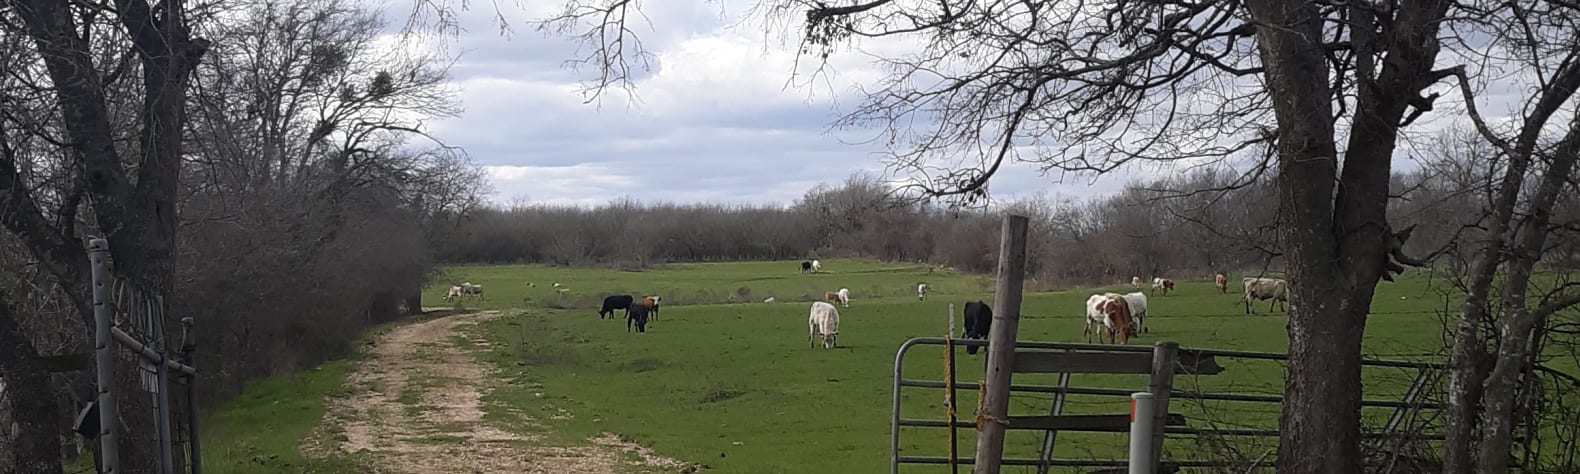 L7 Cattle Ranch Plus